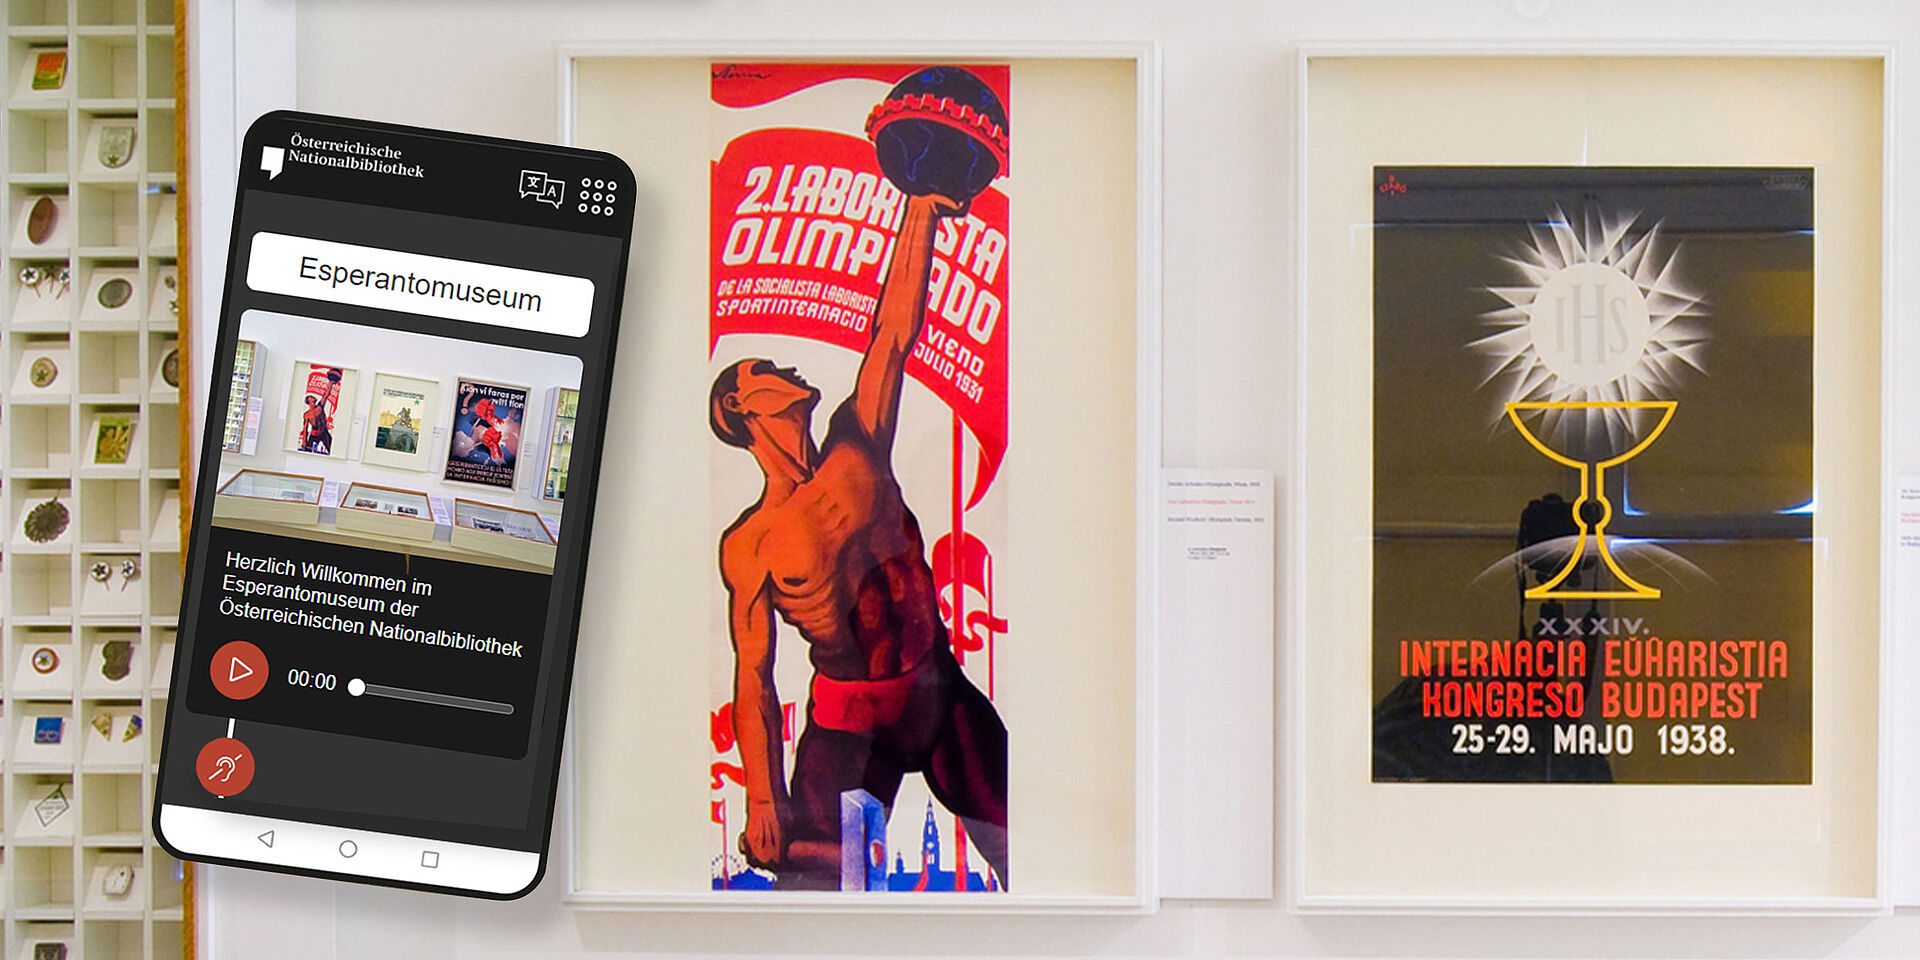 Foto von Postern in Museumsraum und Smartphone-Display, das Audiospuren zeigt